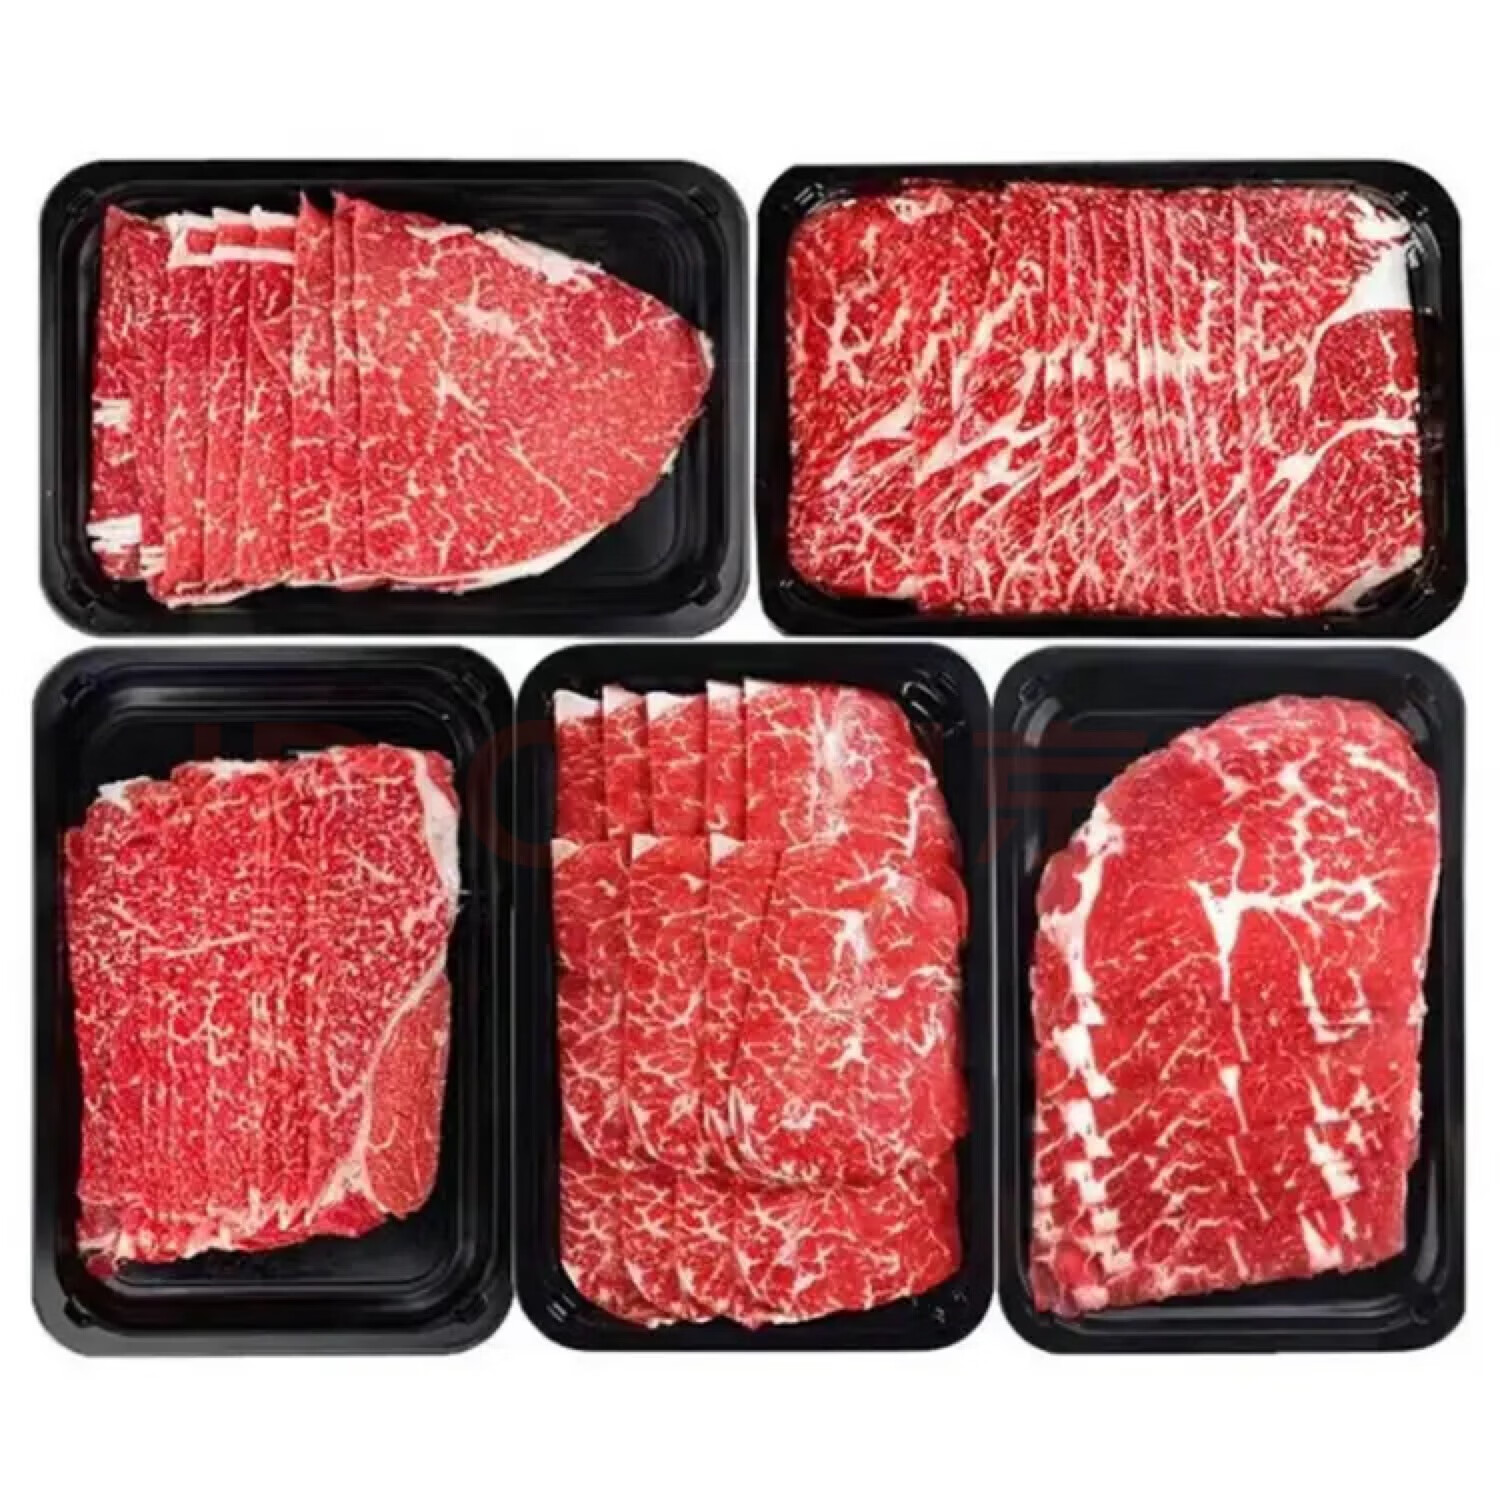 澳洲安格斯原切M5 牛肉片5盒 2斤装+ ￥63